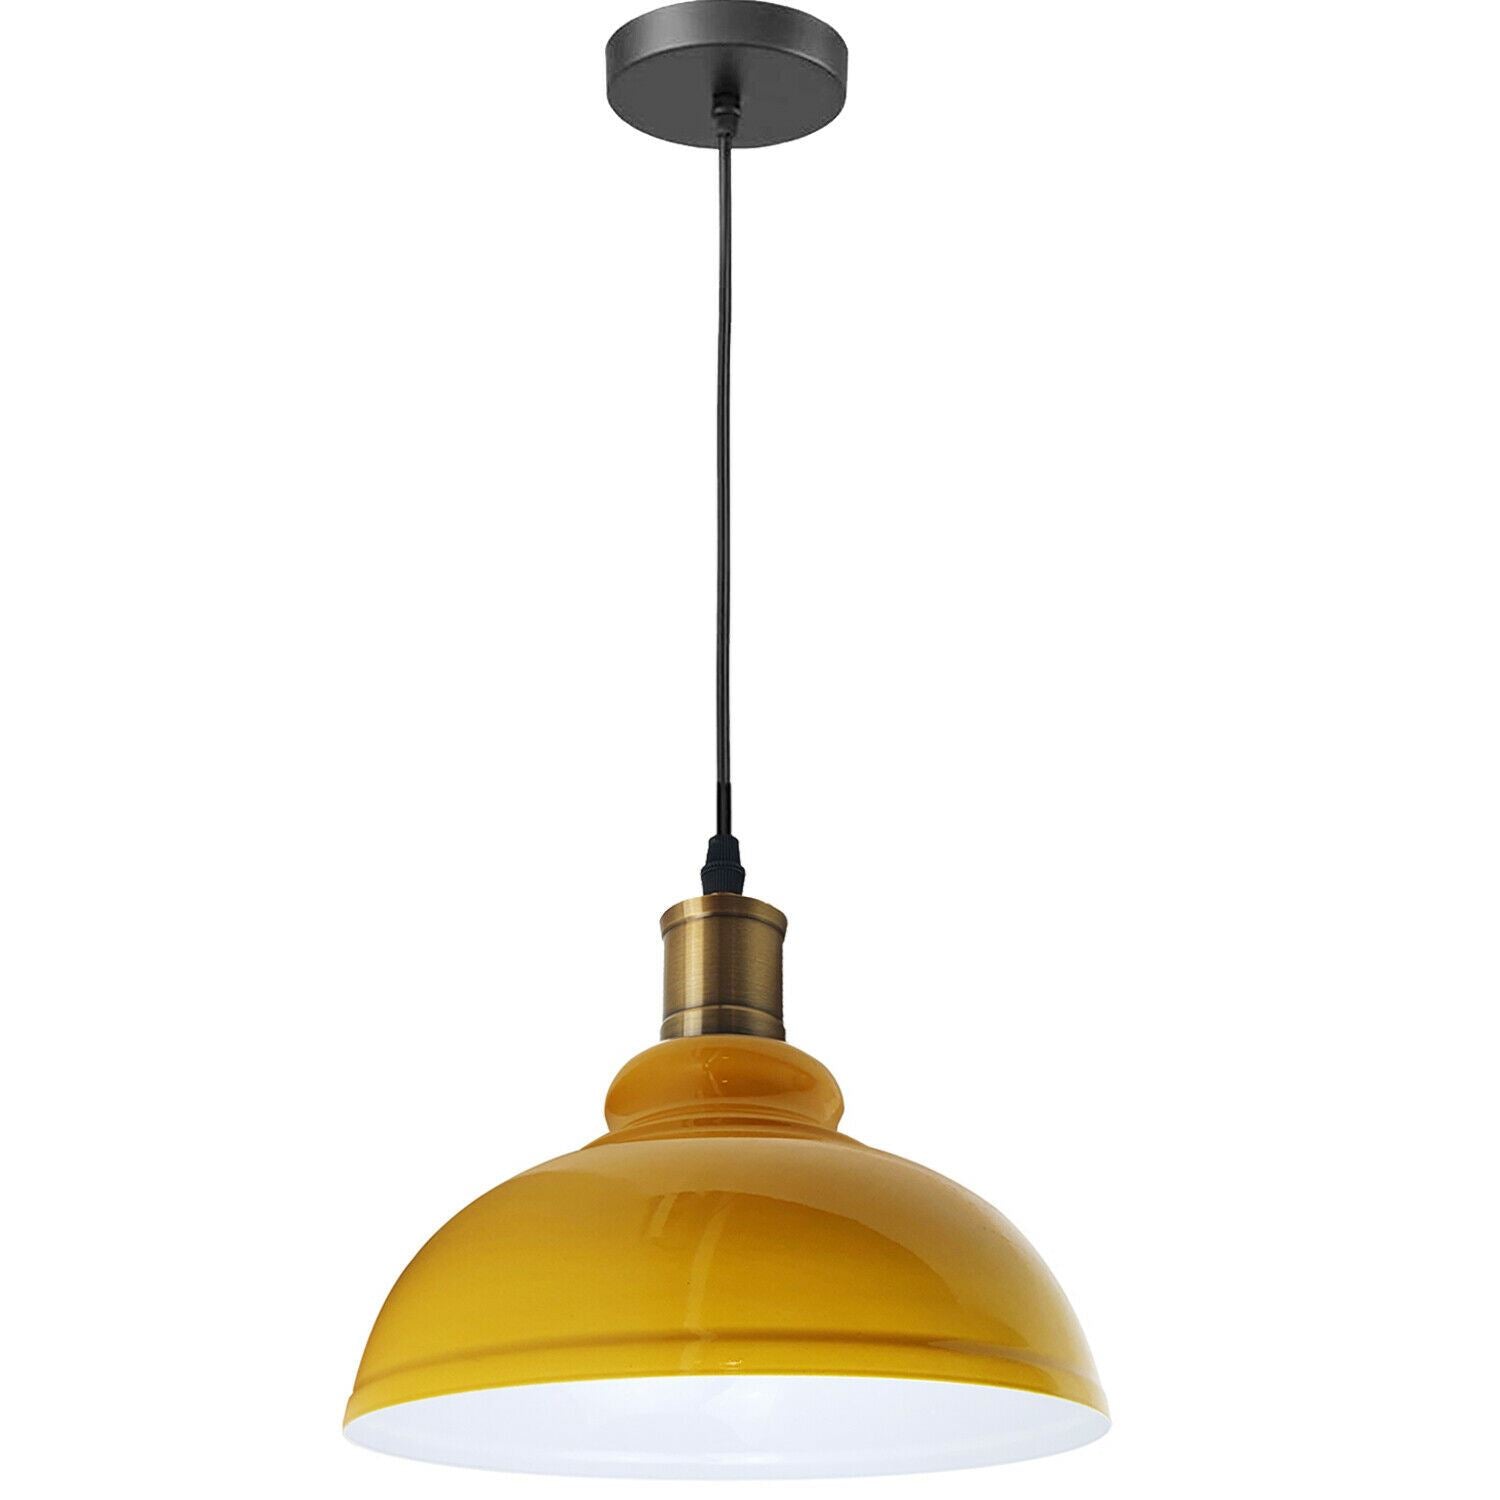 Vintage Industrial Metal Ceiling Pendant Shade Modern Hanging Retro Lights~1292 - LEDSone UK Ltd